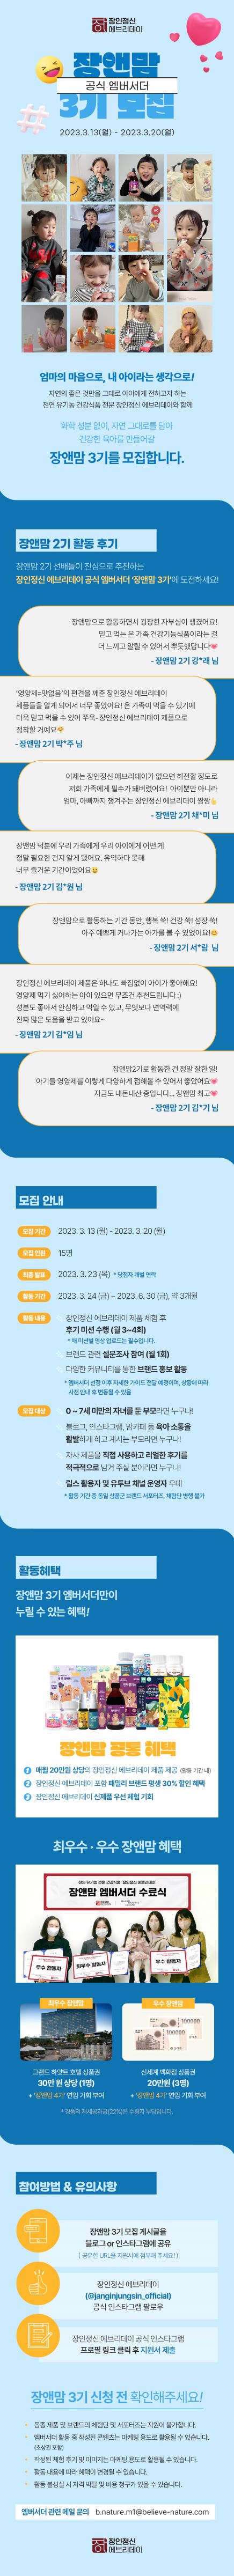 장인정신 에브리데이 공식 엠버서더 '장앤맘 3기' 모집